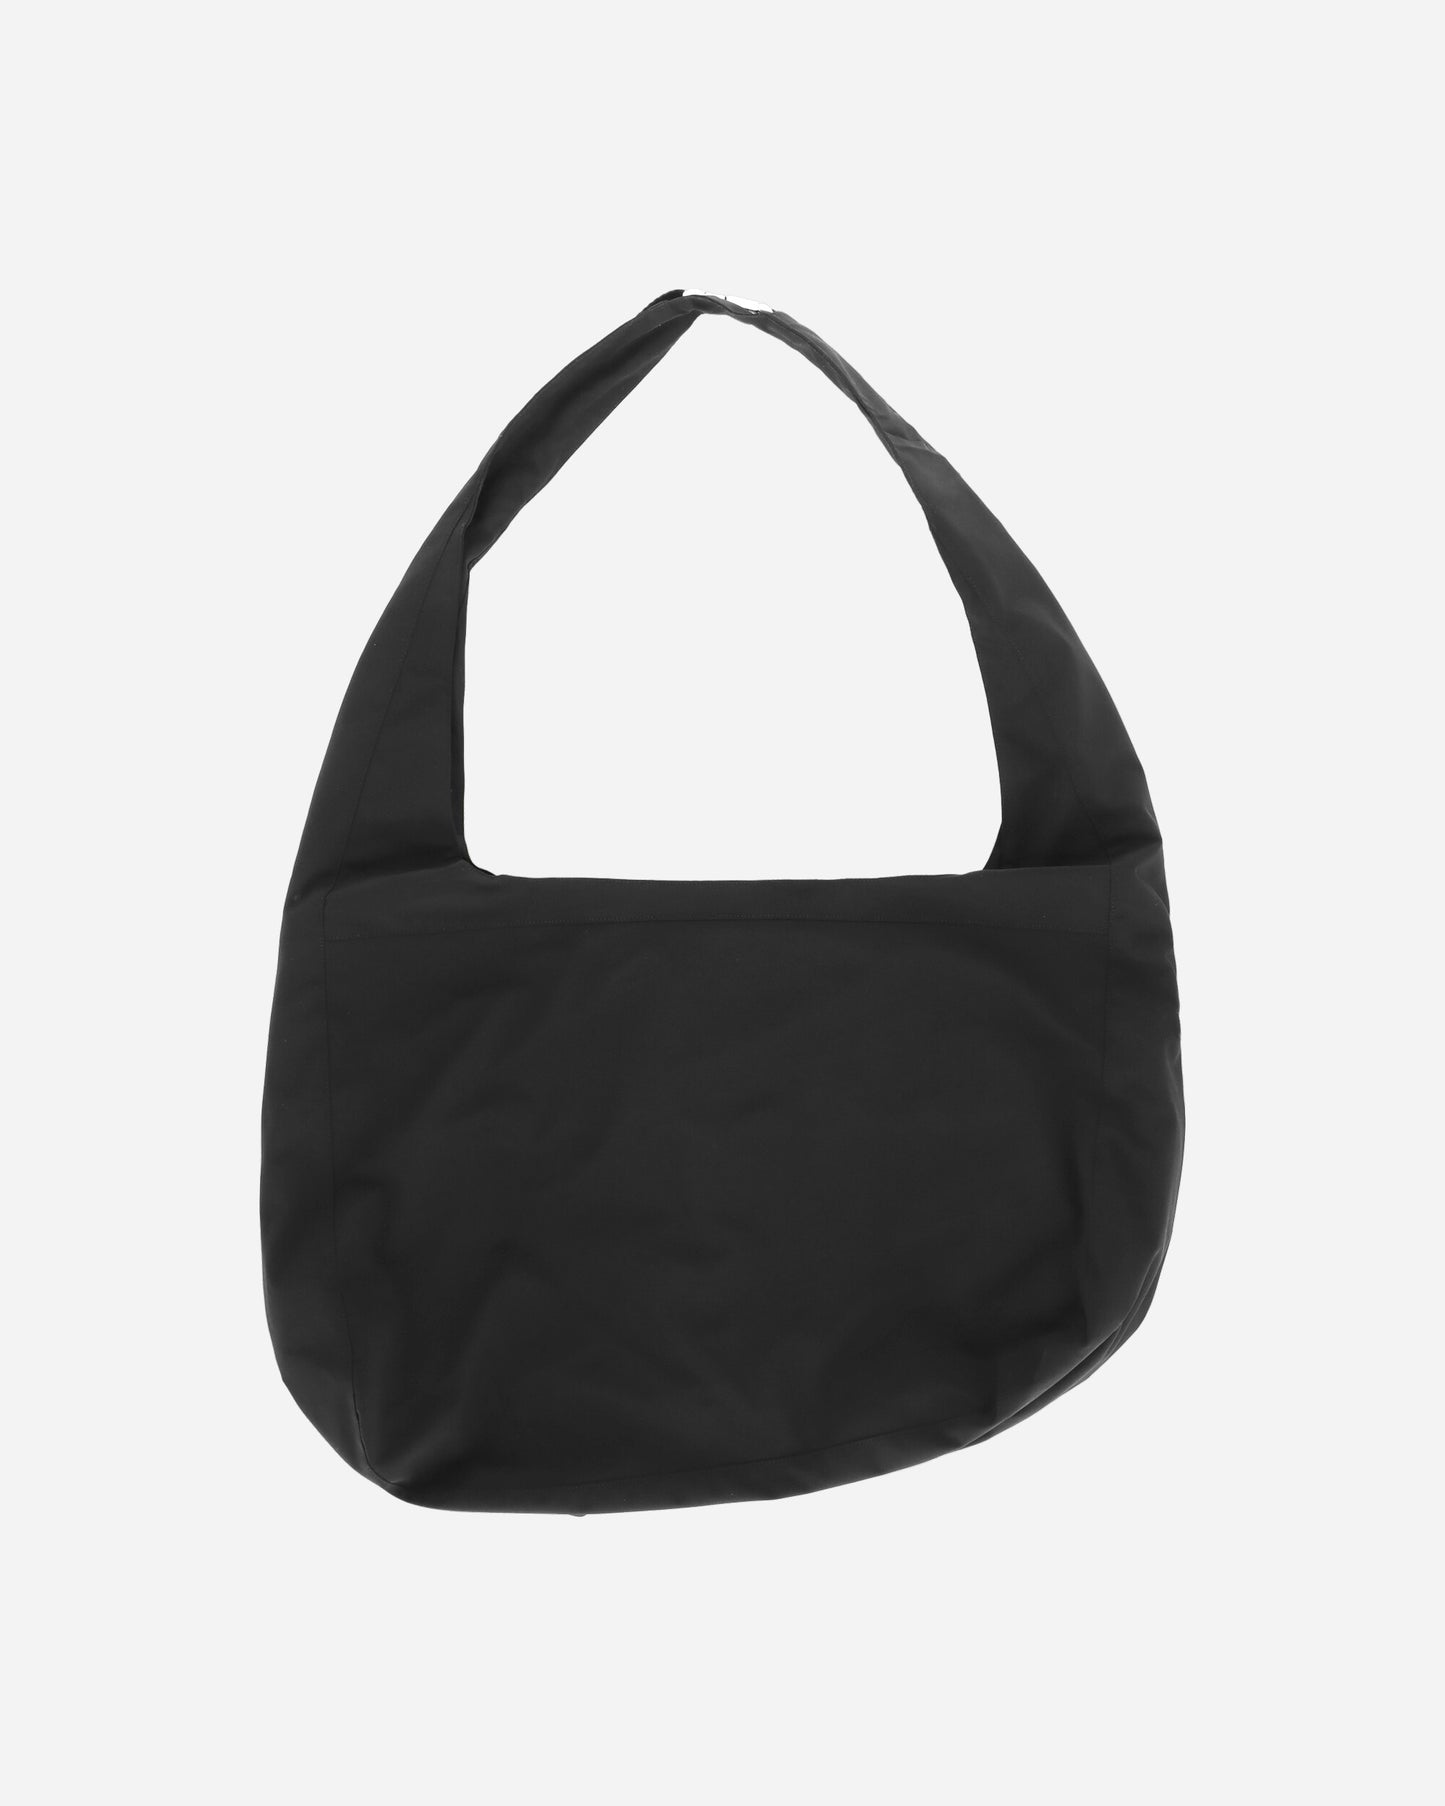 _J.L-A.L_ Dyad Bag Black Bags and Backpacks Shoulder Bags JBUW203FA03 BLK0001